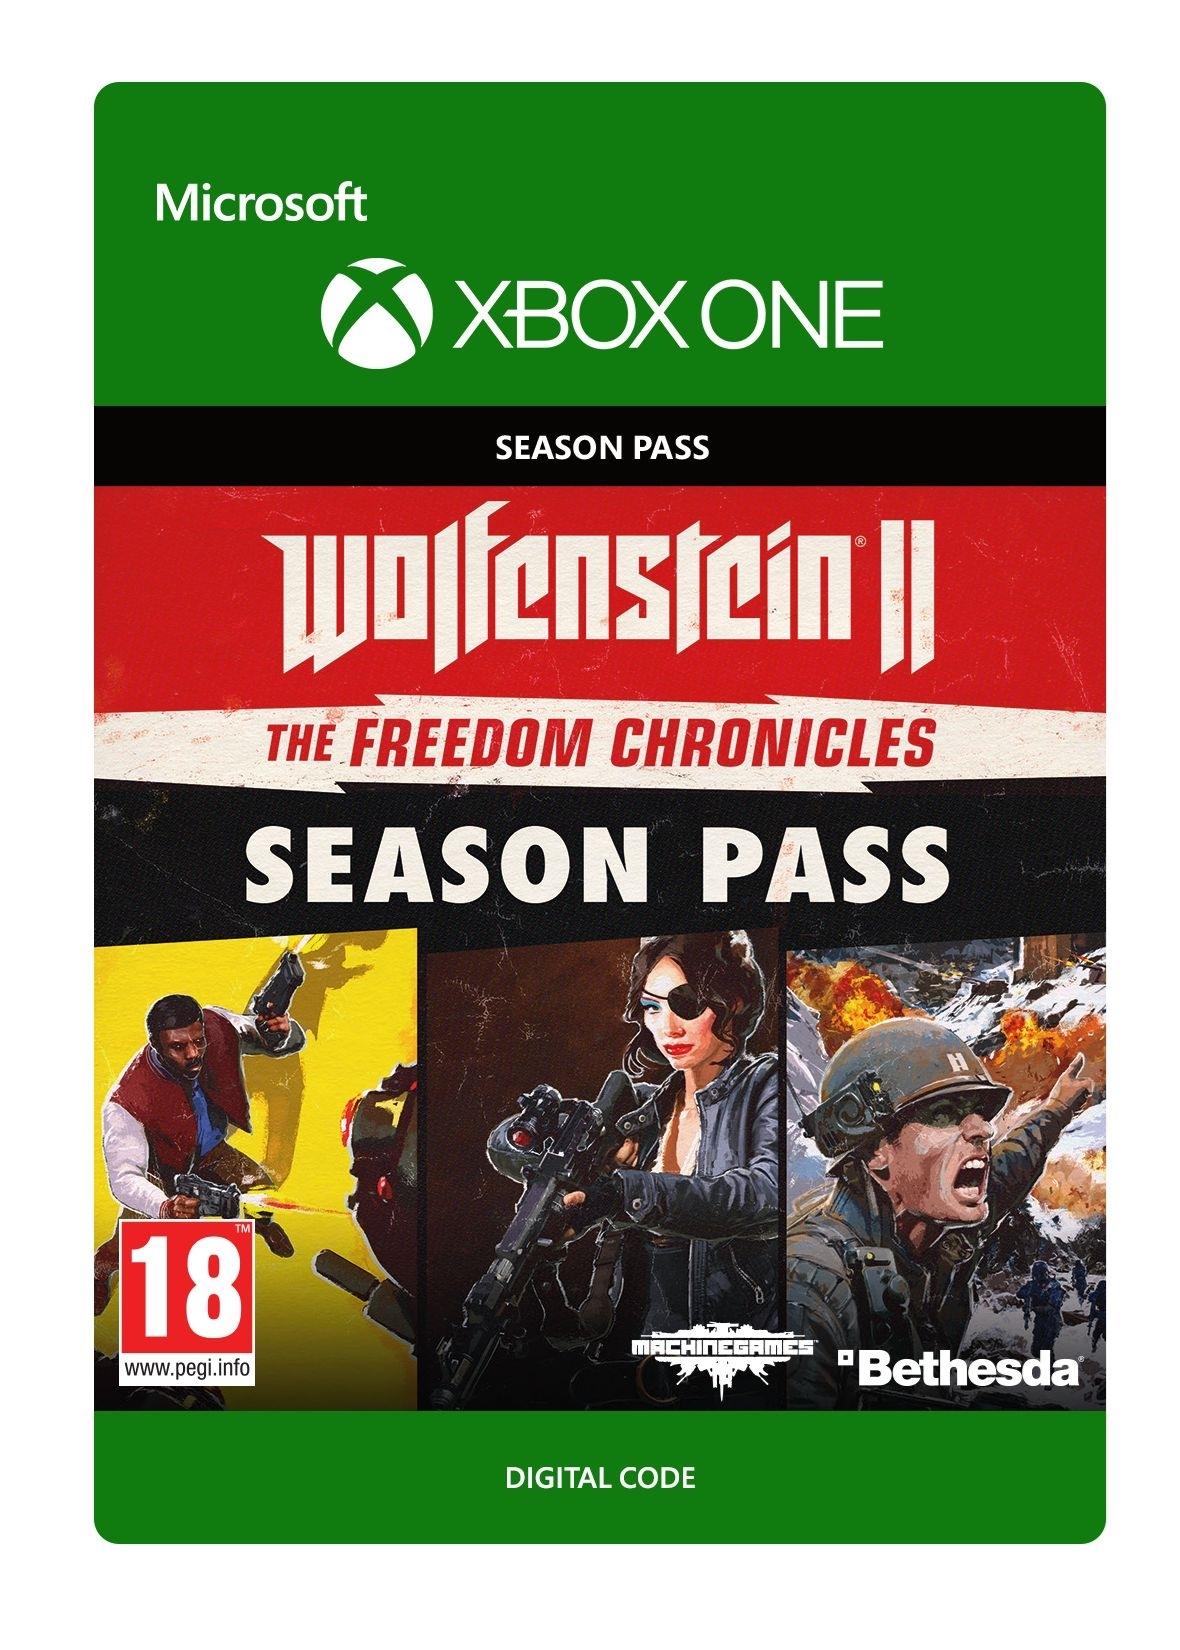 Wolfenstein II: Season Pass - Xbox One - Season Pass | 7D4-00214 (91762d15-a00f-4011-b3e4-805e100dfcbe)